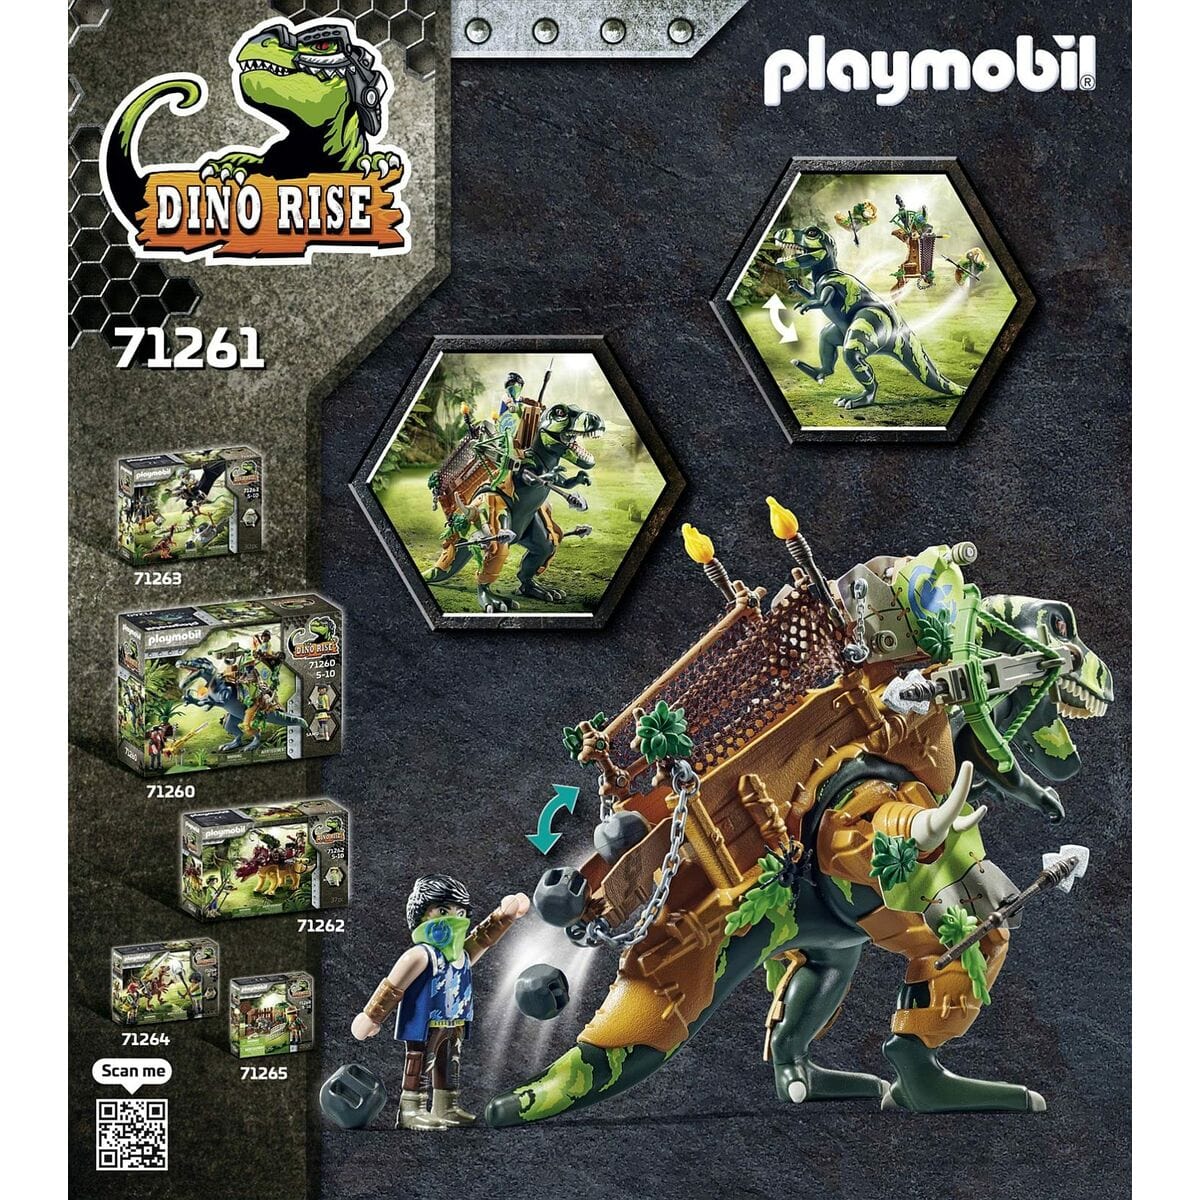 Playmobil Spielzeug | Kostüme > Spielzeug und Spiele > Action-Figuren Playset   Playmobil Dino Rise - Tyrannosaurus and soldier 71261         83 Stücke